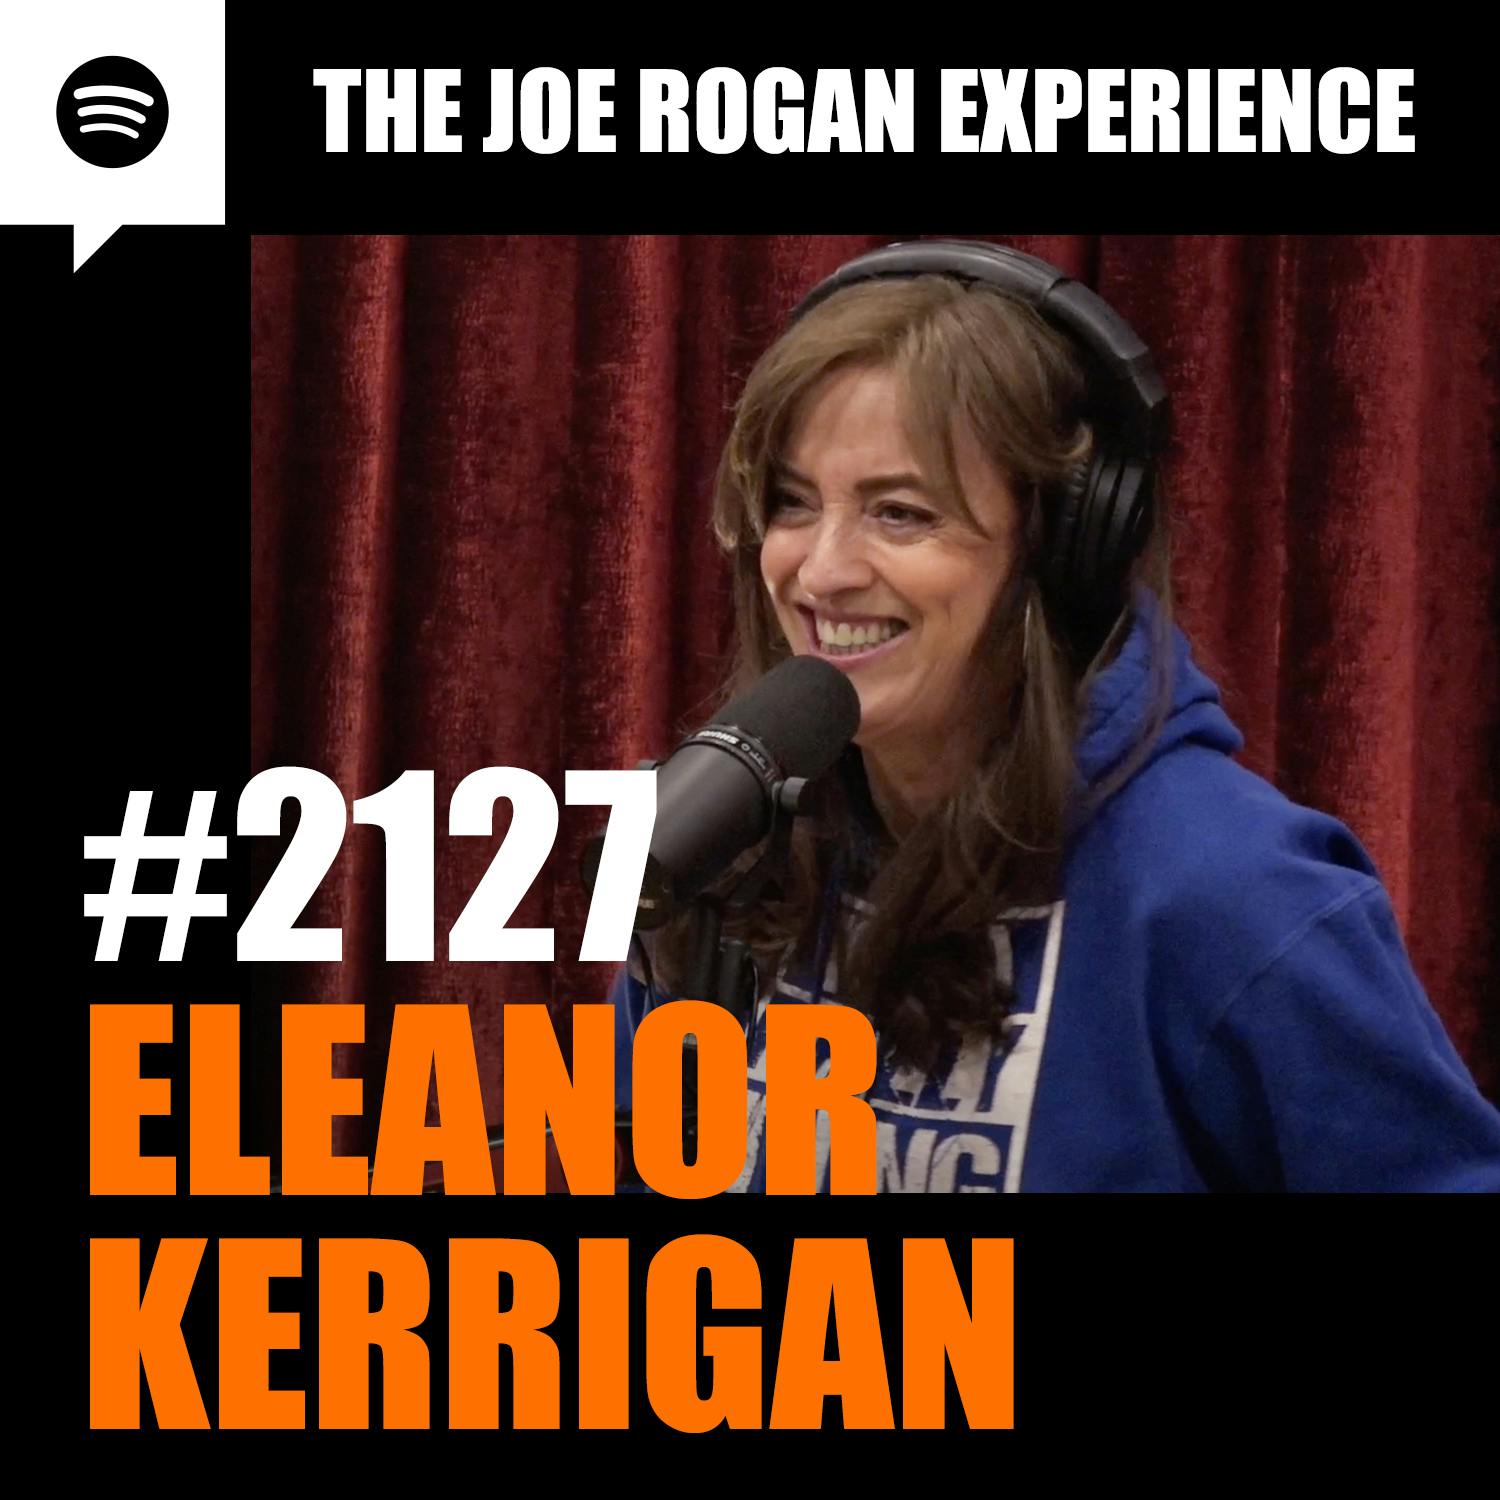 #2127 - Eleanor Kerrigan